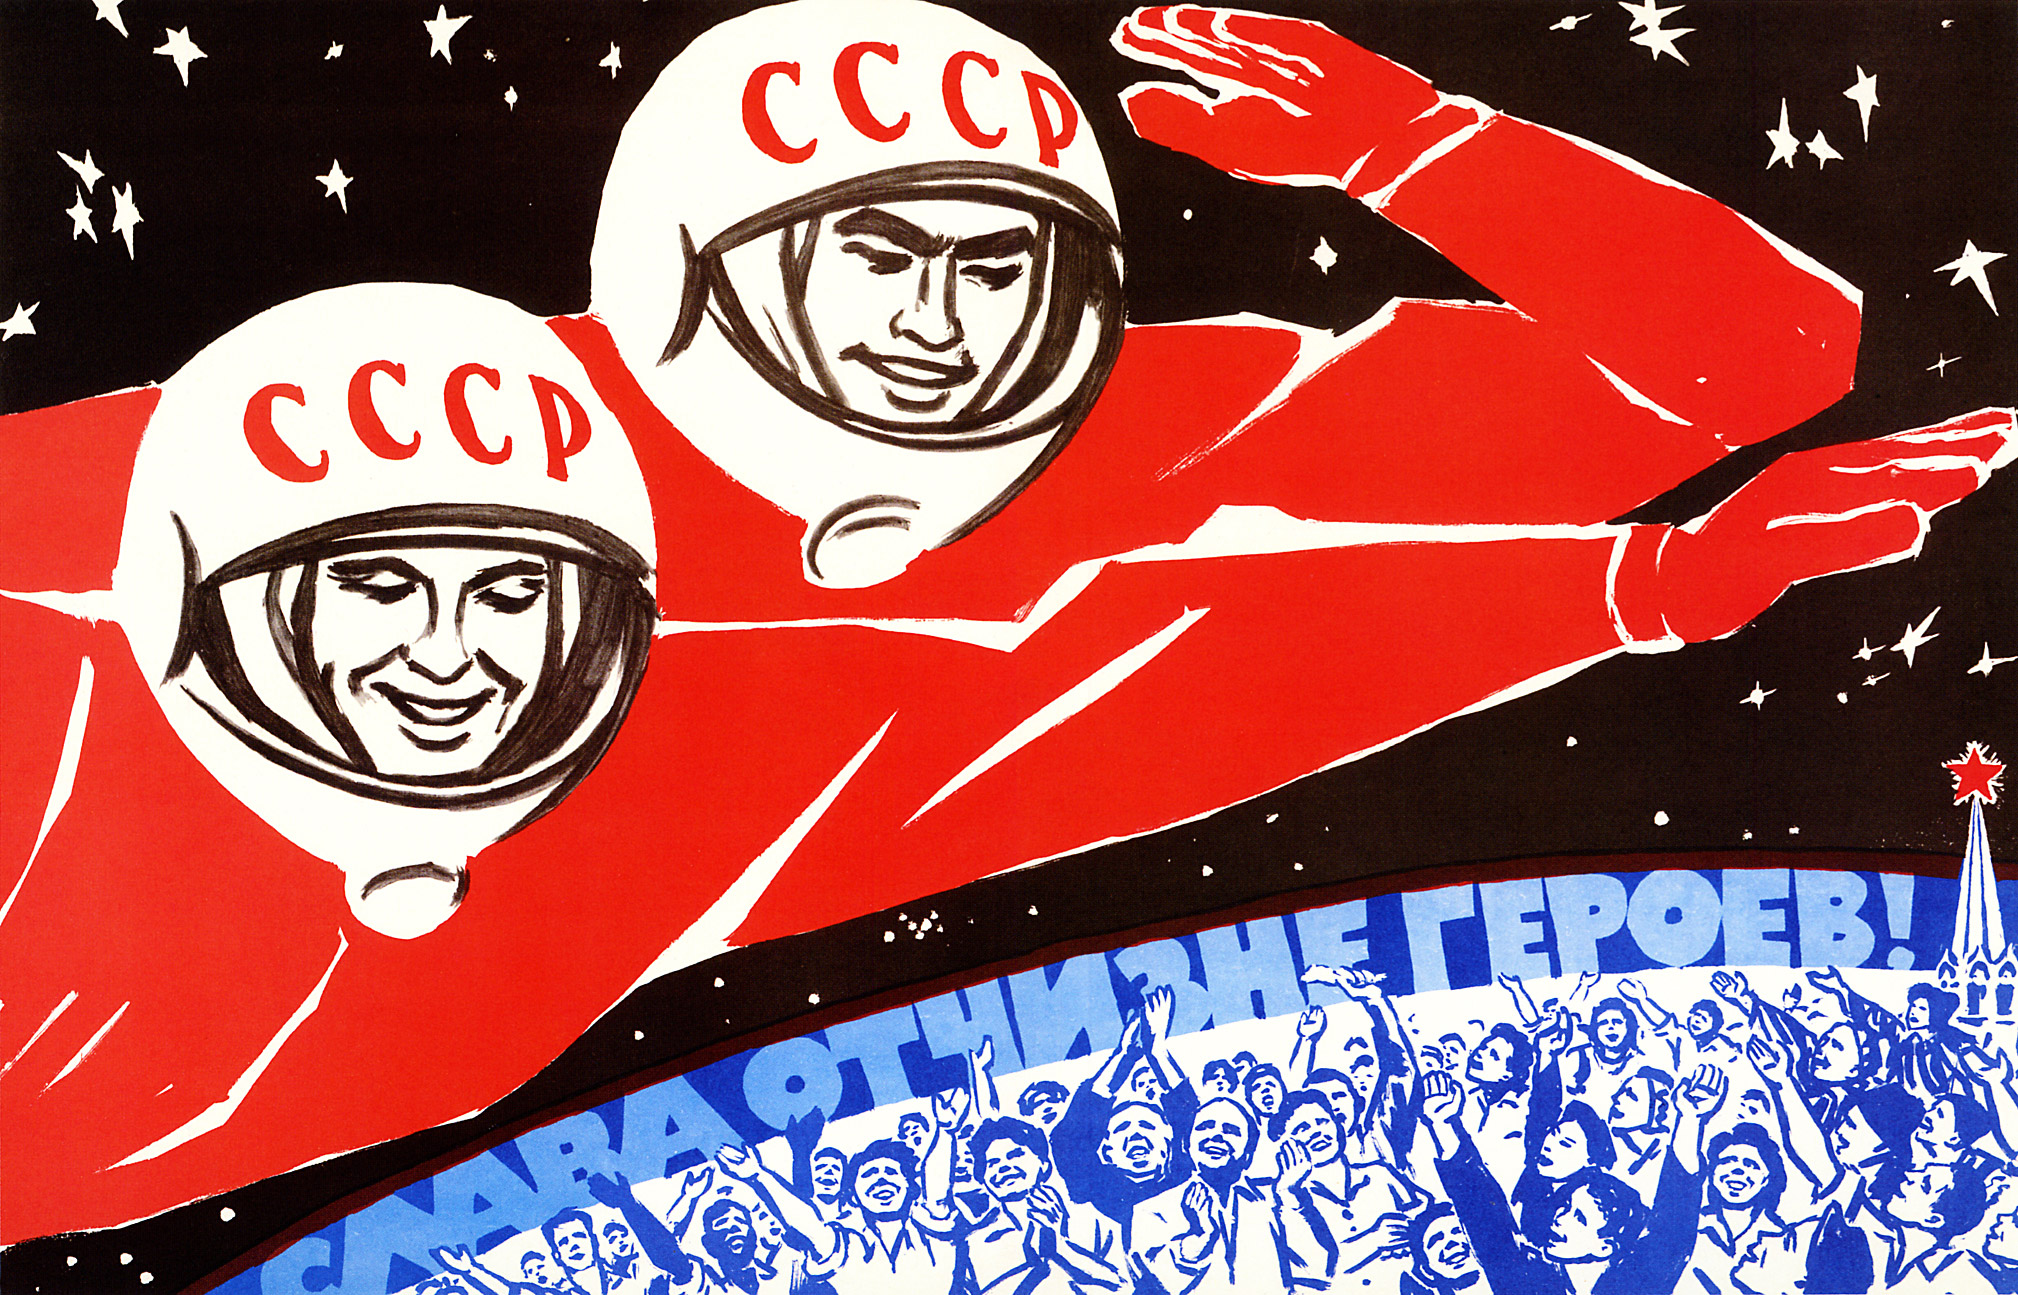 soviet_space_program_propaganda_poster.jpg